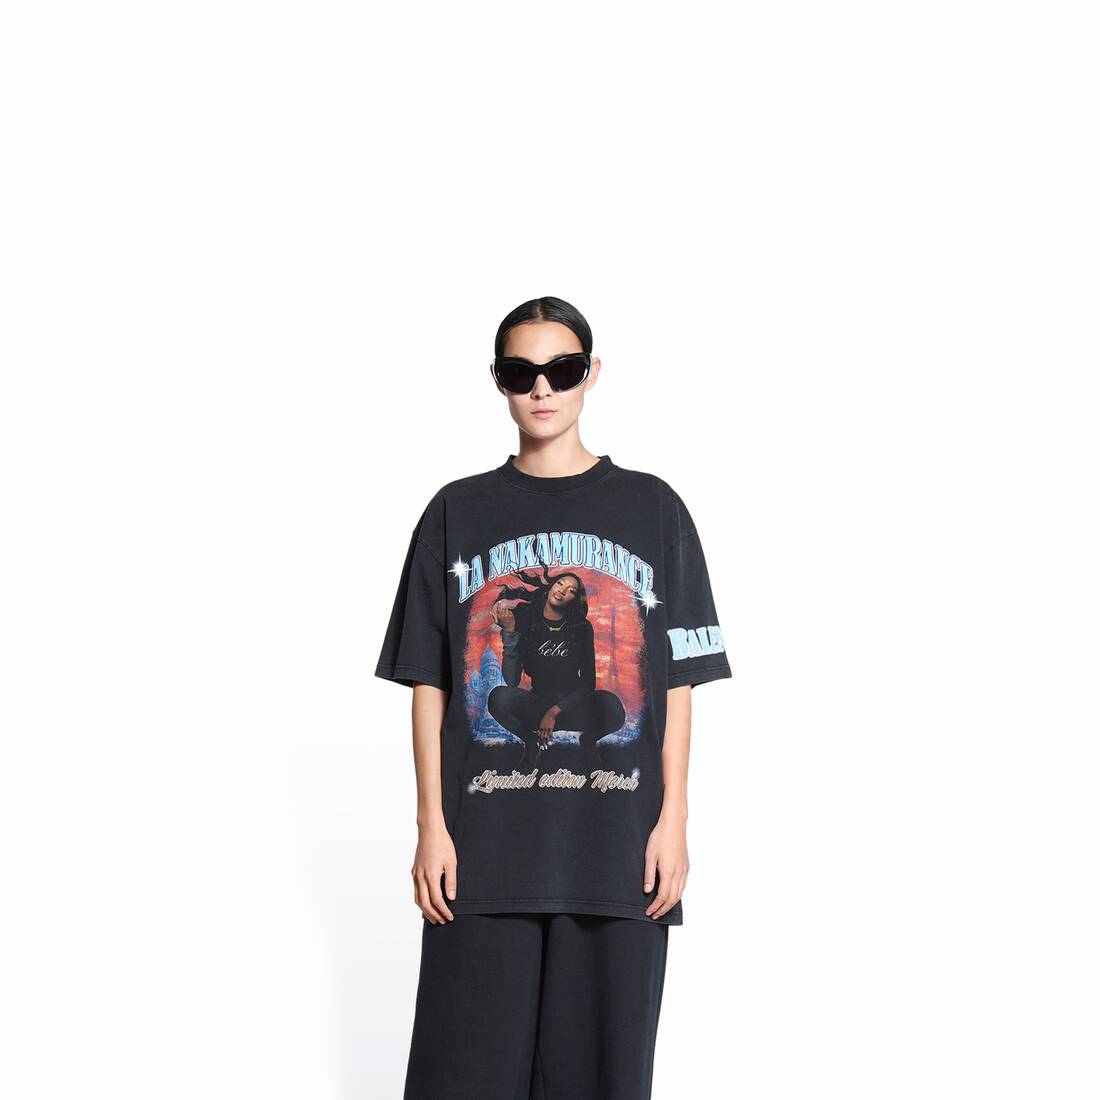 Balenciaga Music Aya Nakamura Merch T-Shirt Large Fit in black vintage jersey